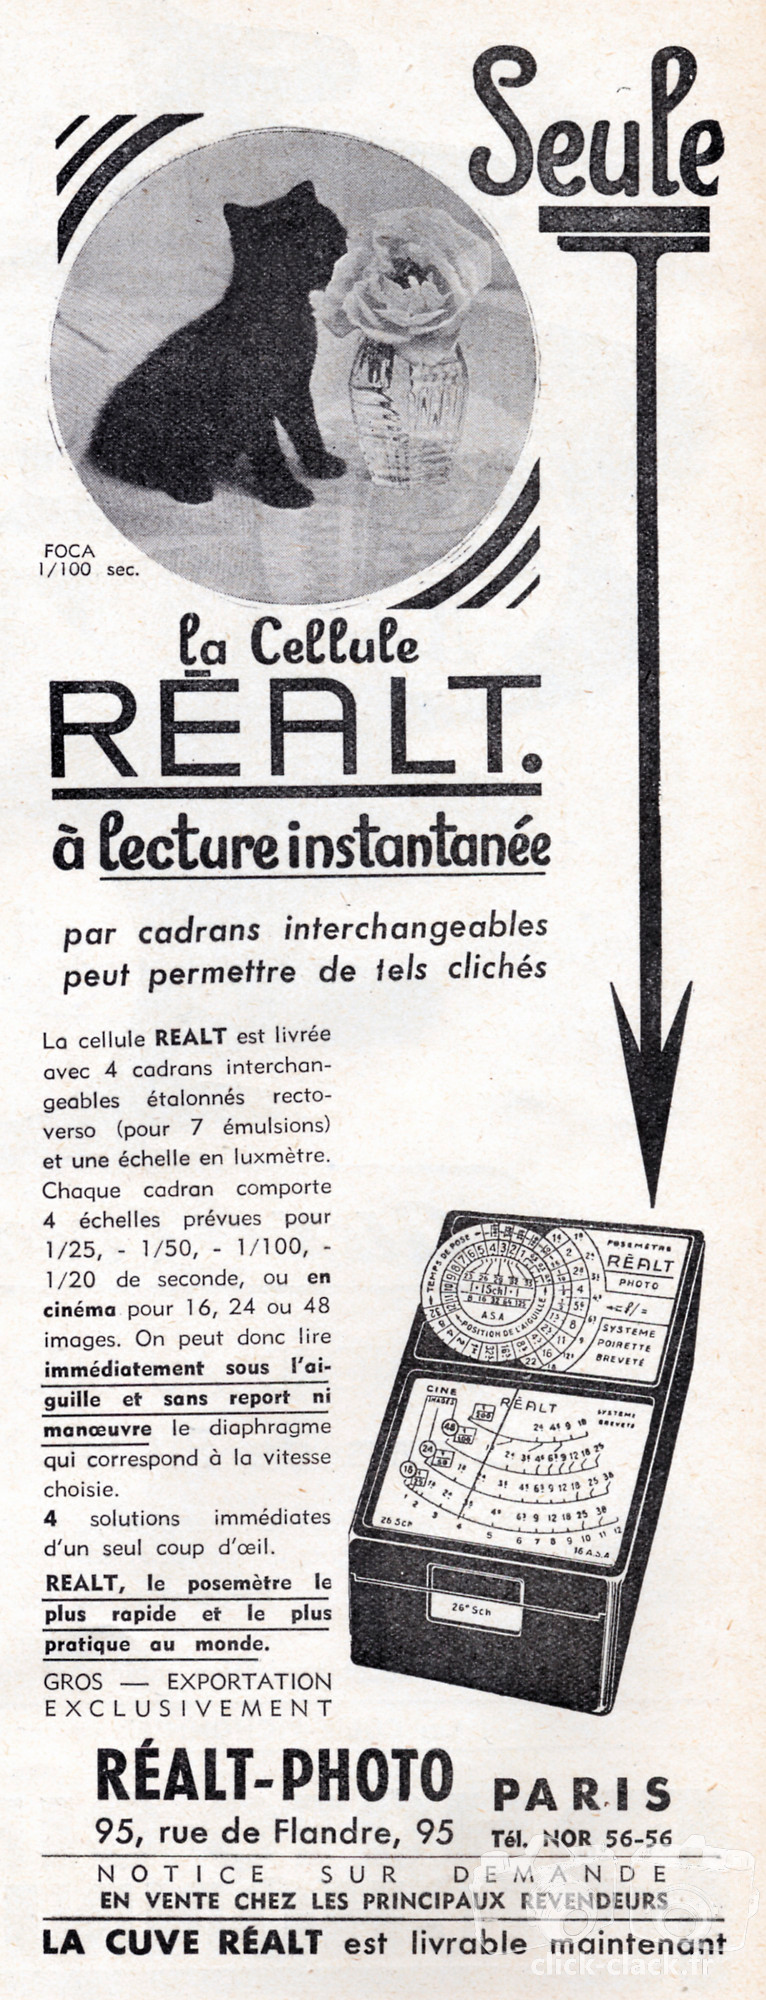 Réalt - Cellule Réalt Photo - 1951